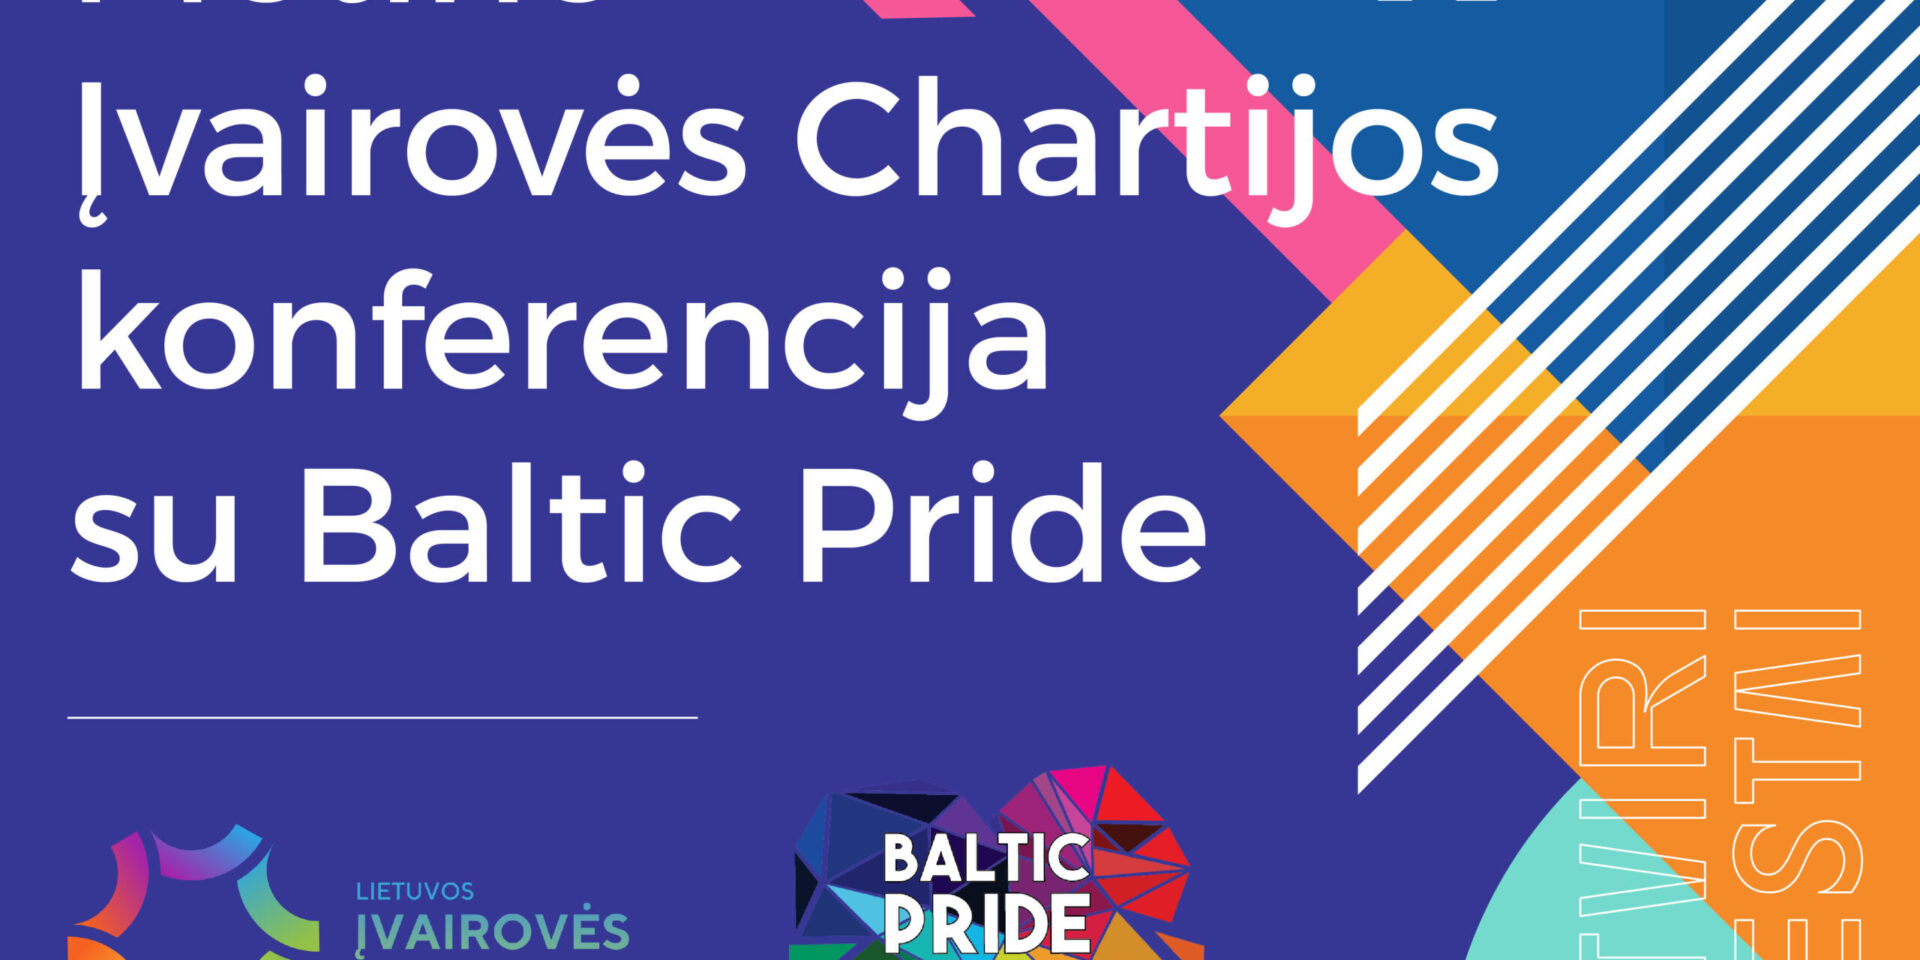 Prasideda metinė Įvairovės chartijos konferencija su Baltic Pride